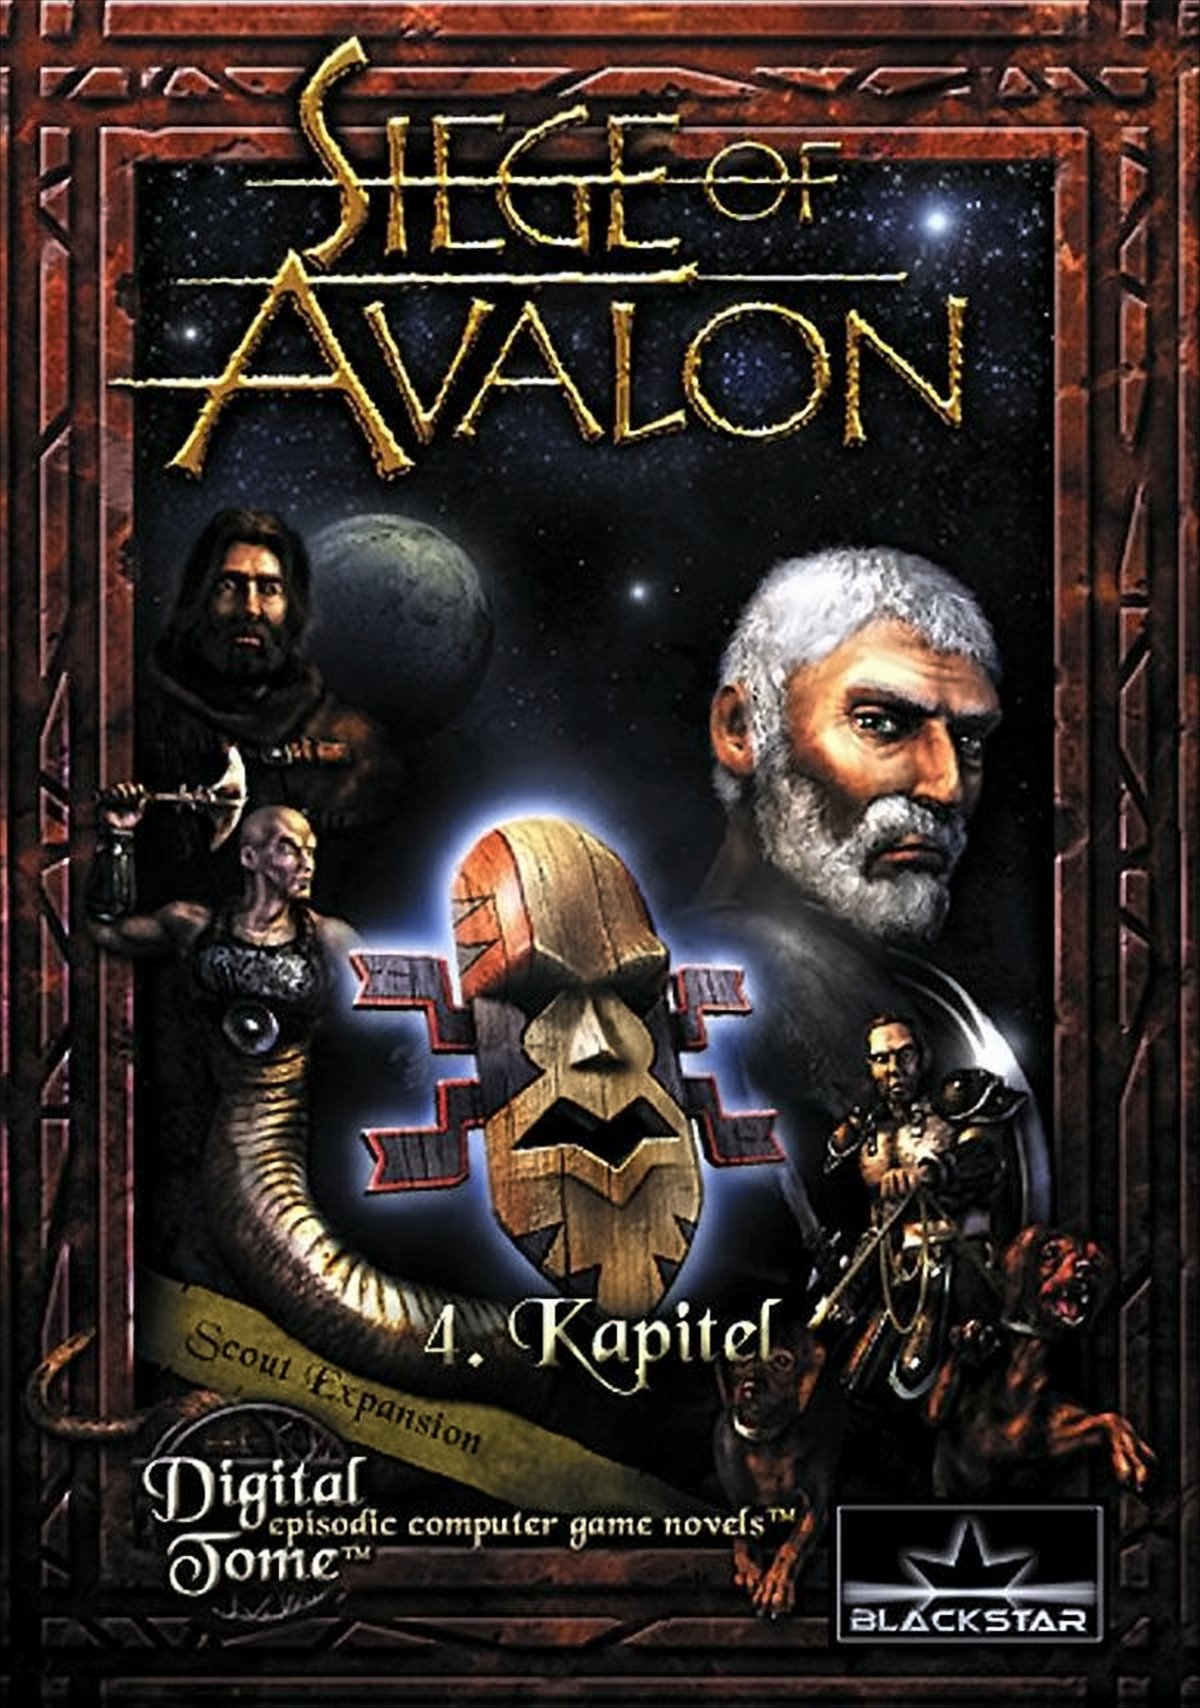 Siege of Avalon Kapitel 4 von Koch Media GmbH